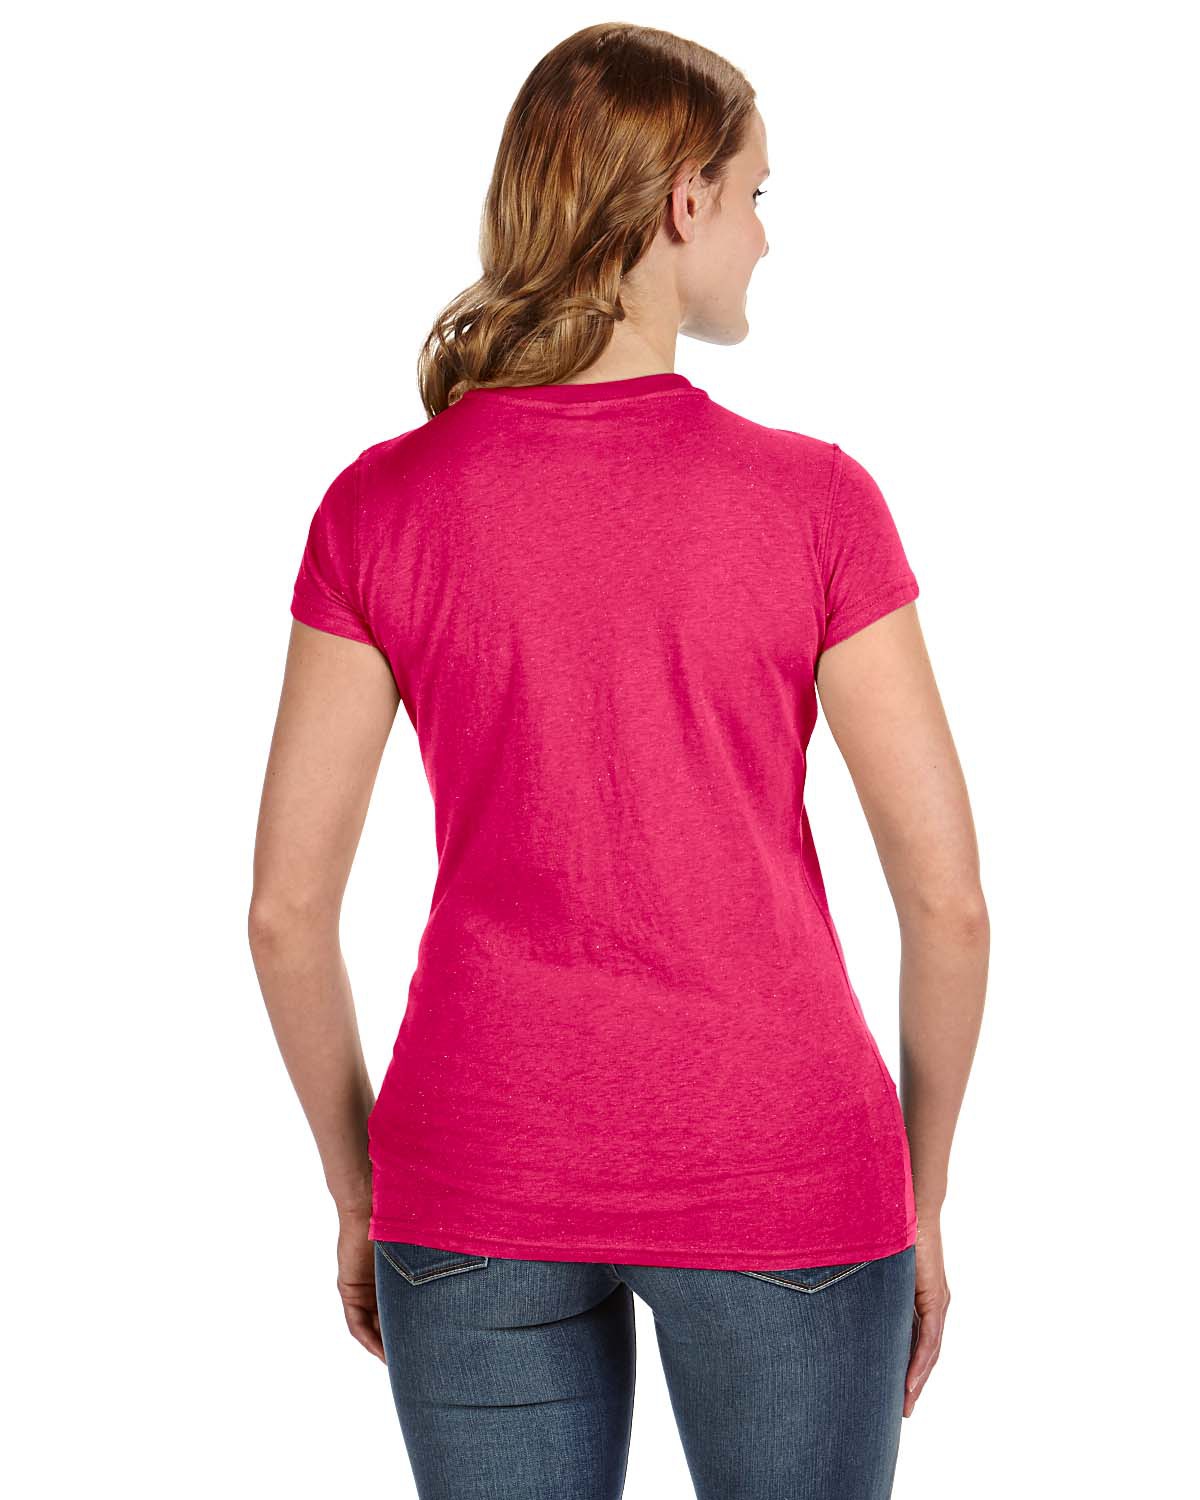 'J America JA8138 Ladies Glitter T-Shirt'